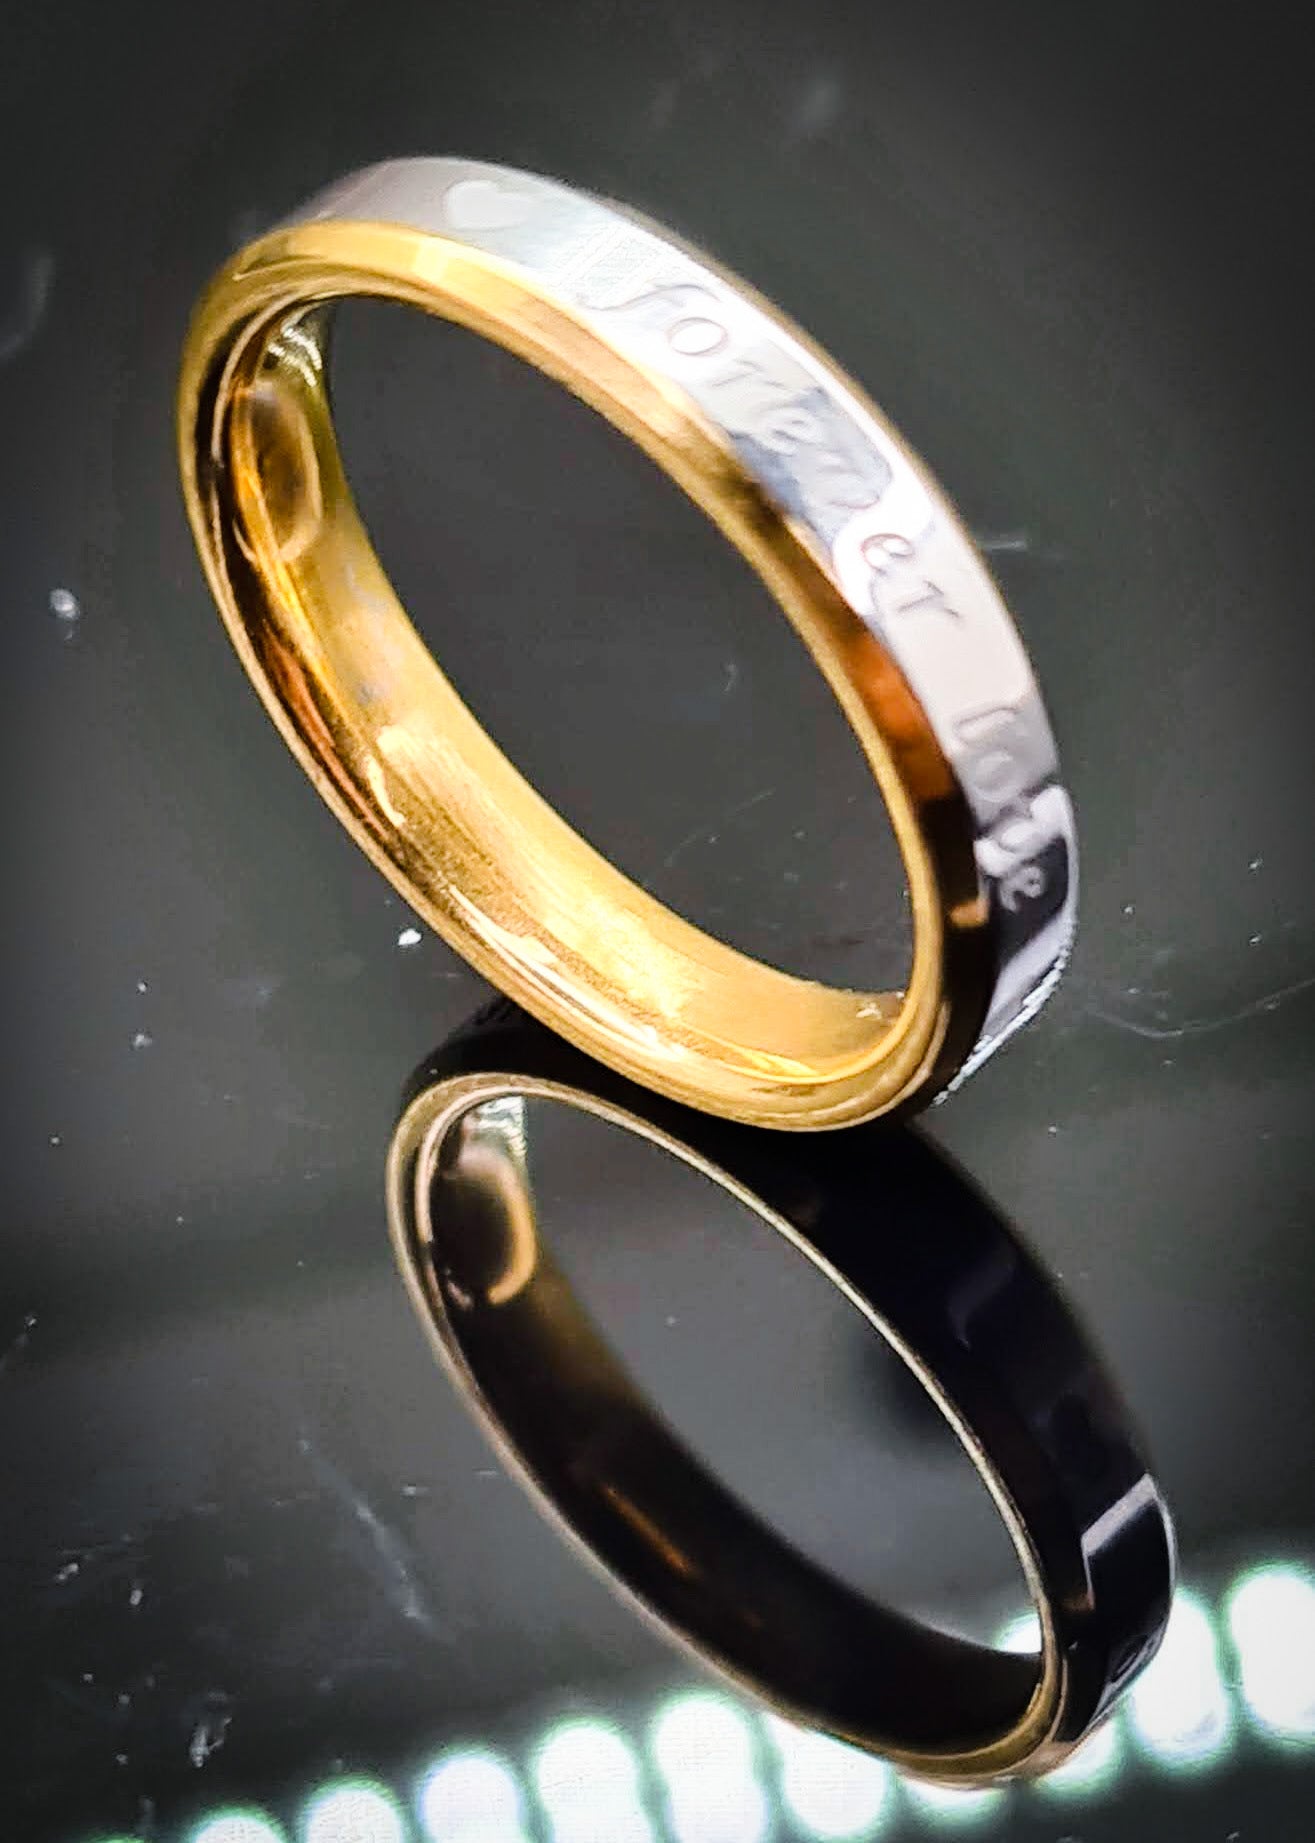 Anillo "Forever Love" tipo alianza de matrimonio o pareja en acero inoxidable bicolor y ancho de 4mm. Se incluye grabado de nombres y fecha importante gratis. Posa sobre fondo negro.